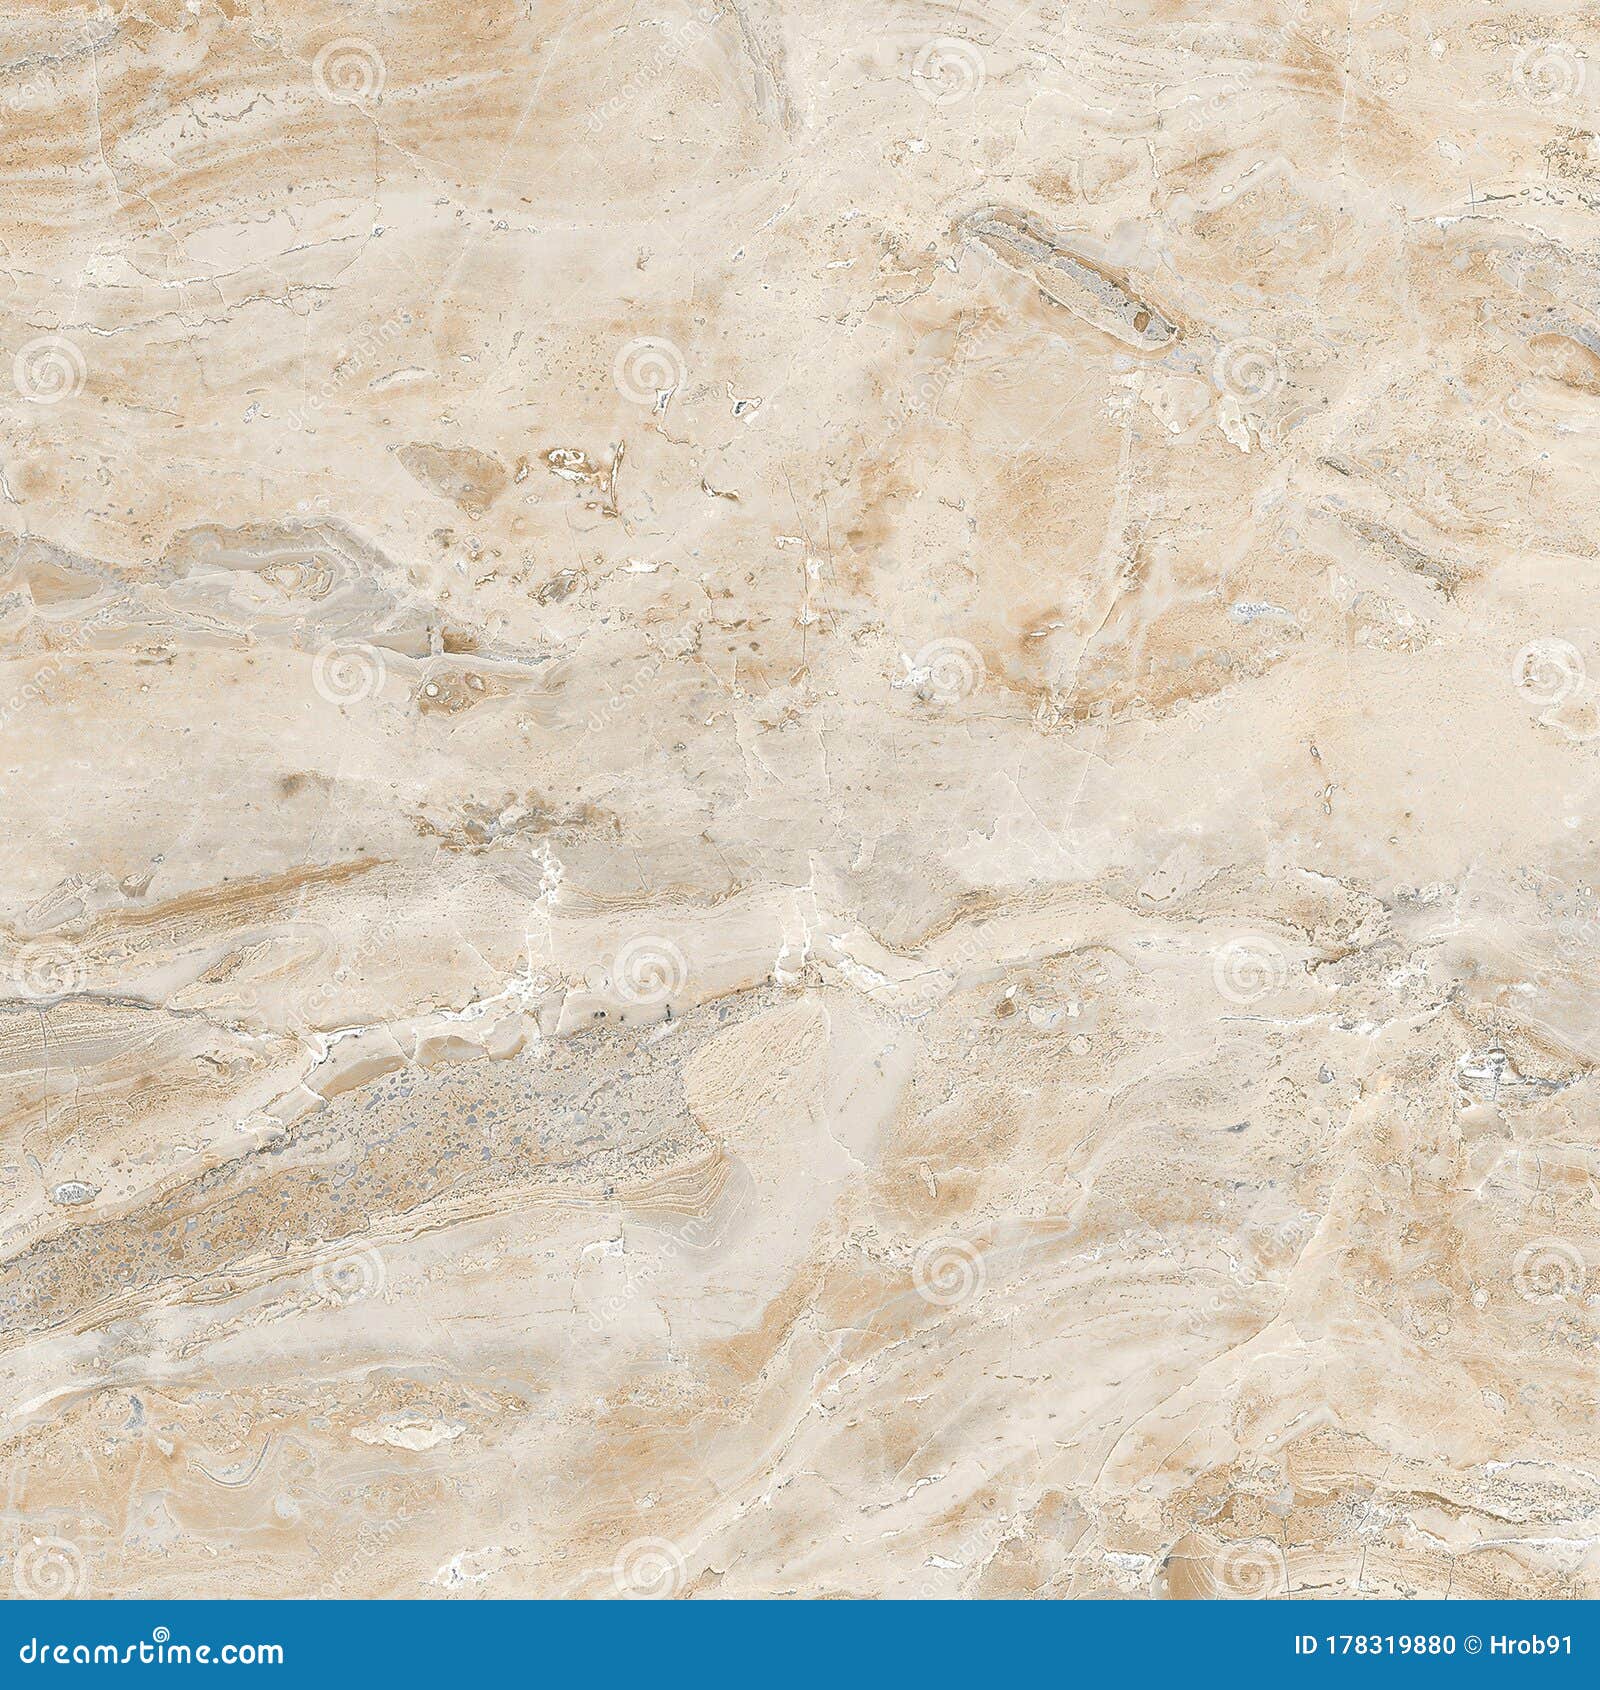 marfil tan color granite texture